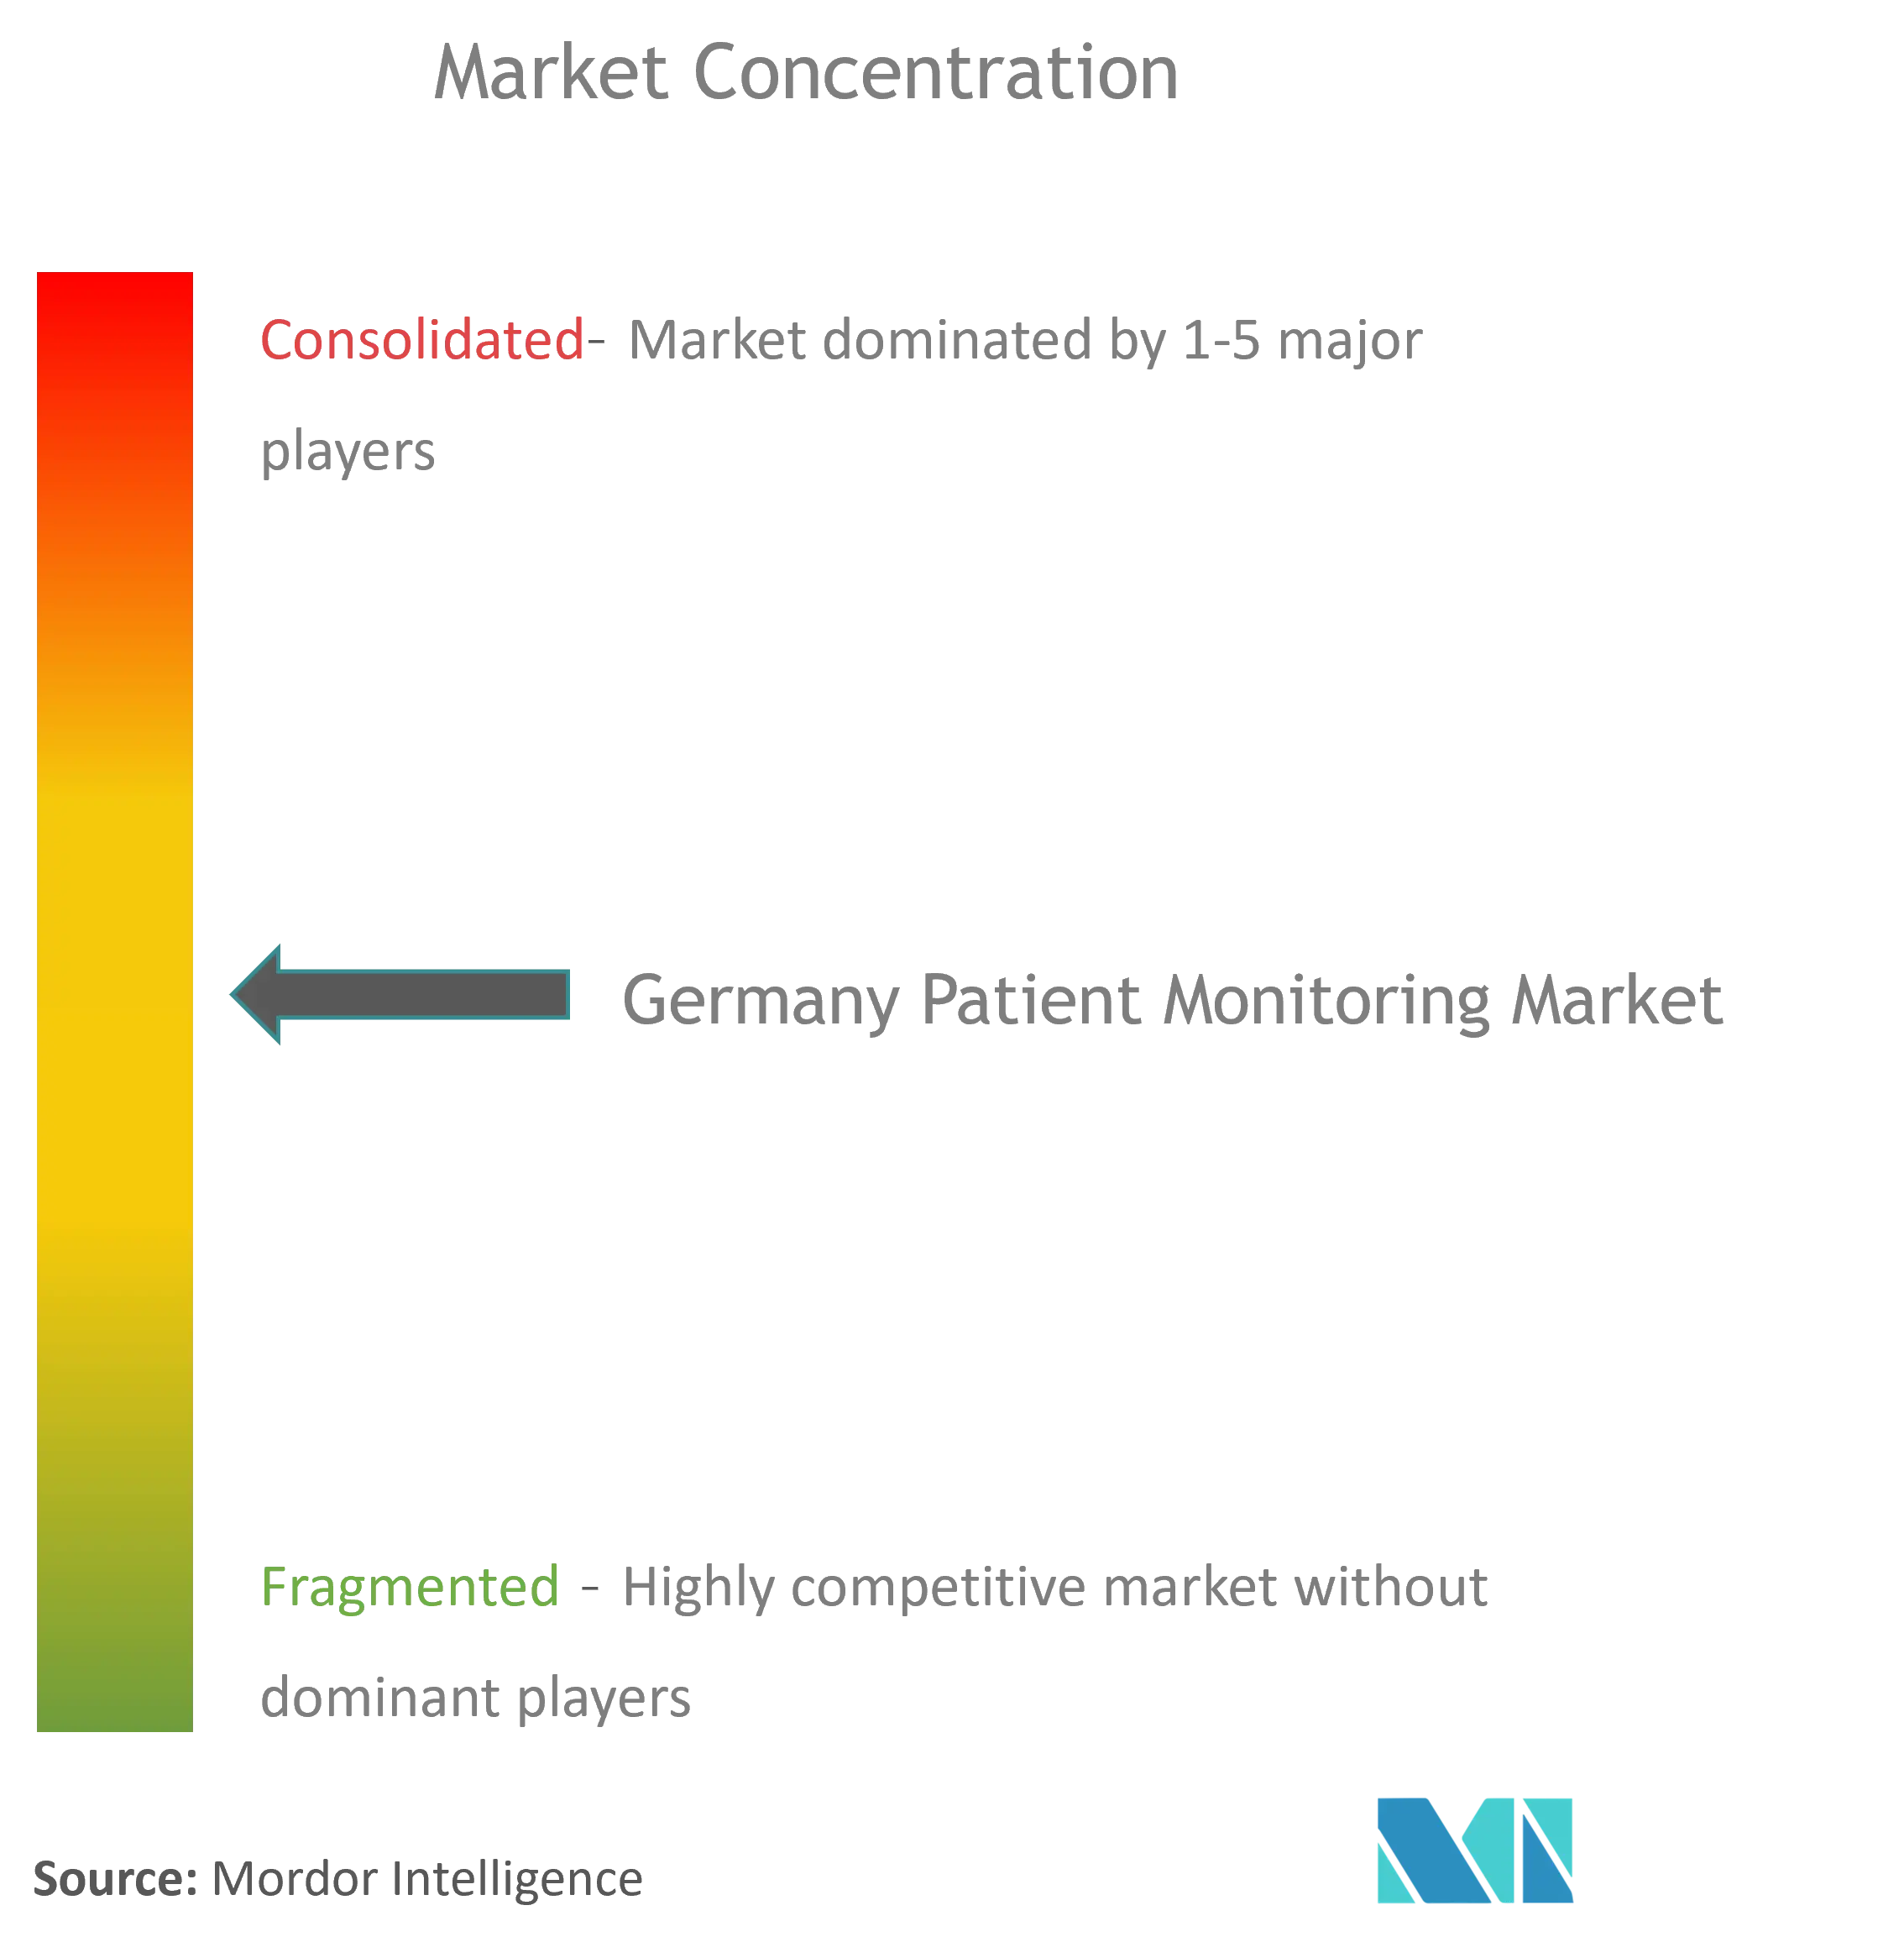 ドイツの患者モニタリング市場集中度